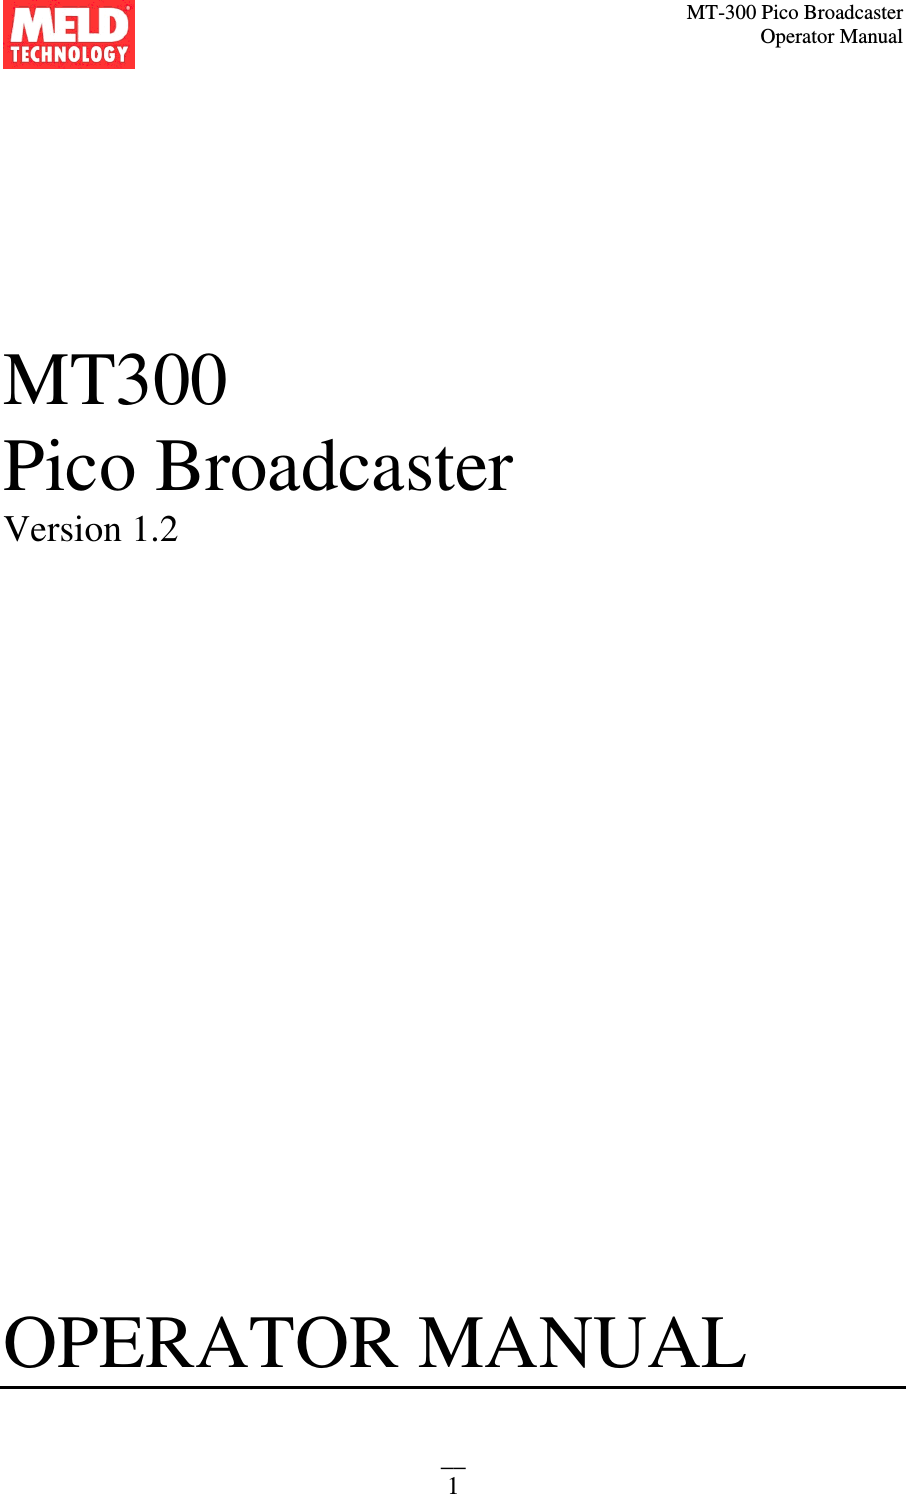 MT-300 Pico Broadcaster                                                                                                                                             Operator Manual __ 1    MT300 Pico Broadcaster  Version 1.2                         OPERATOR MANUAL    